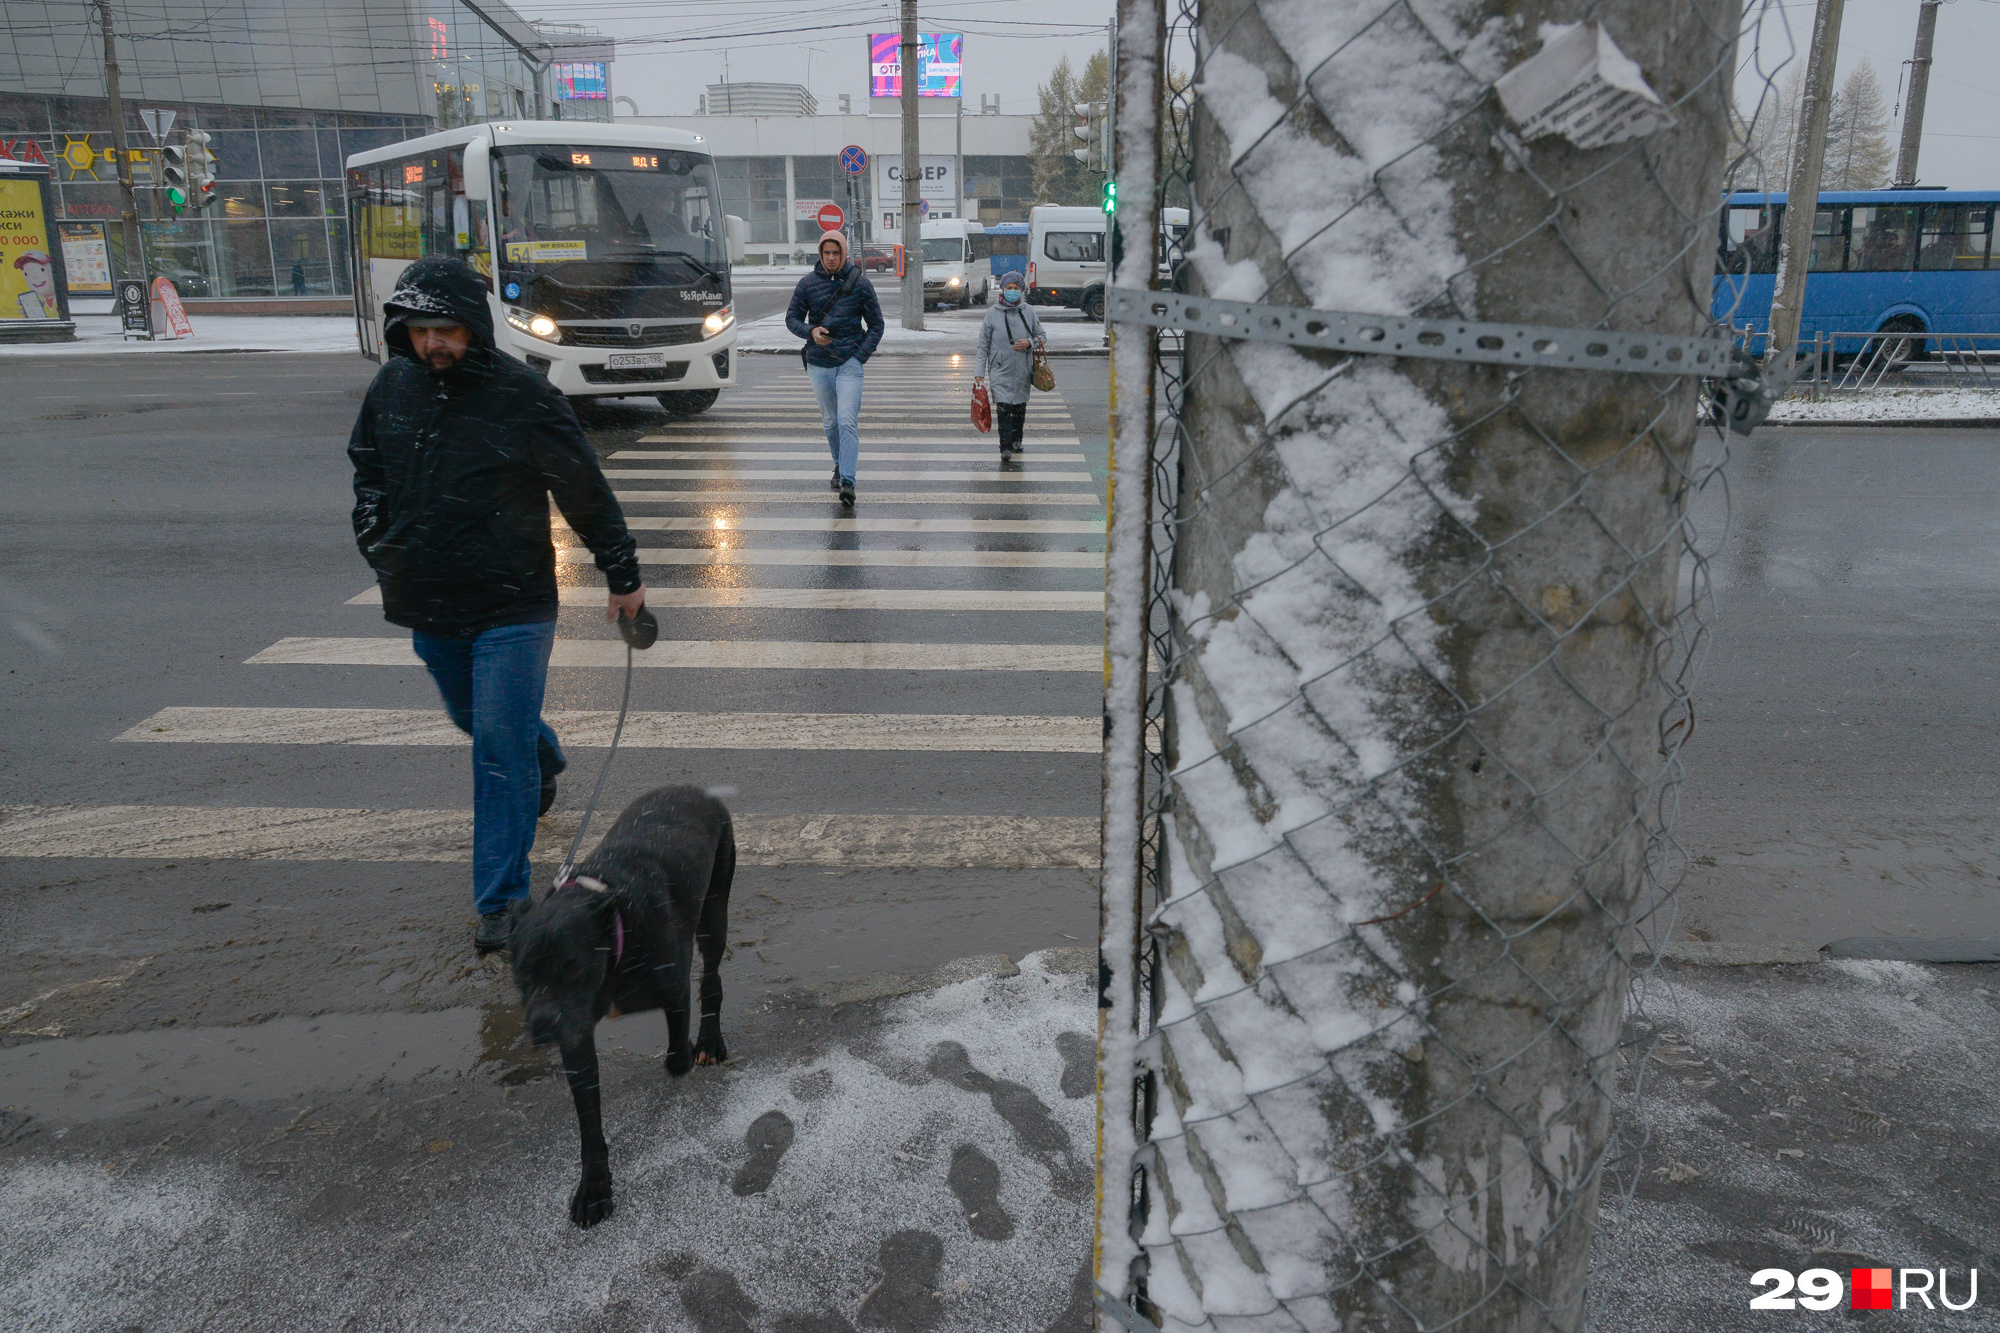 Гулять с собаками по улицам города по правилам можно только на коротком поводке